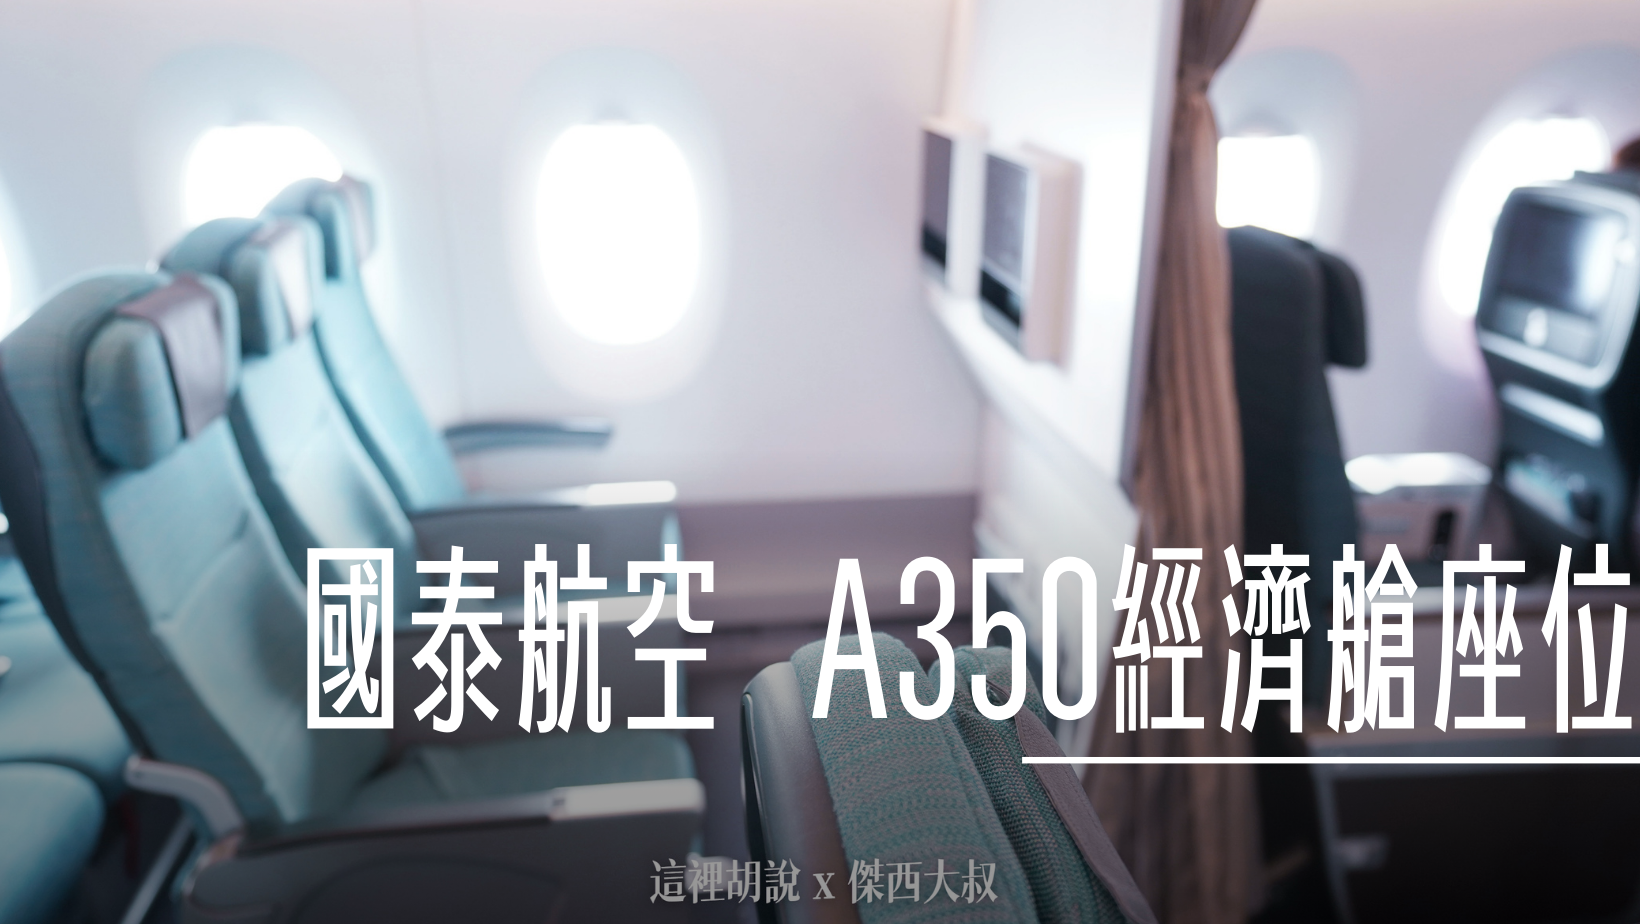 國泰航空 A350 經濟艙開箱 照片記錄